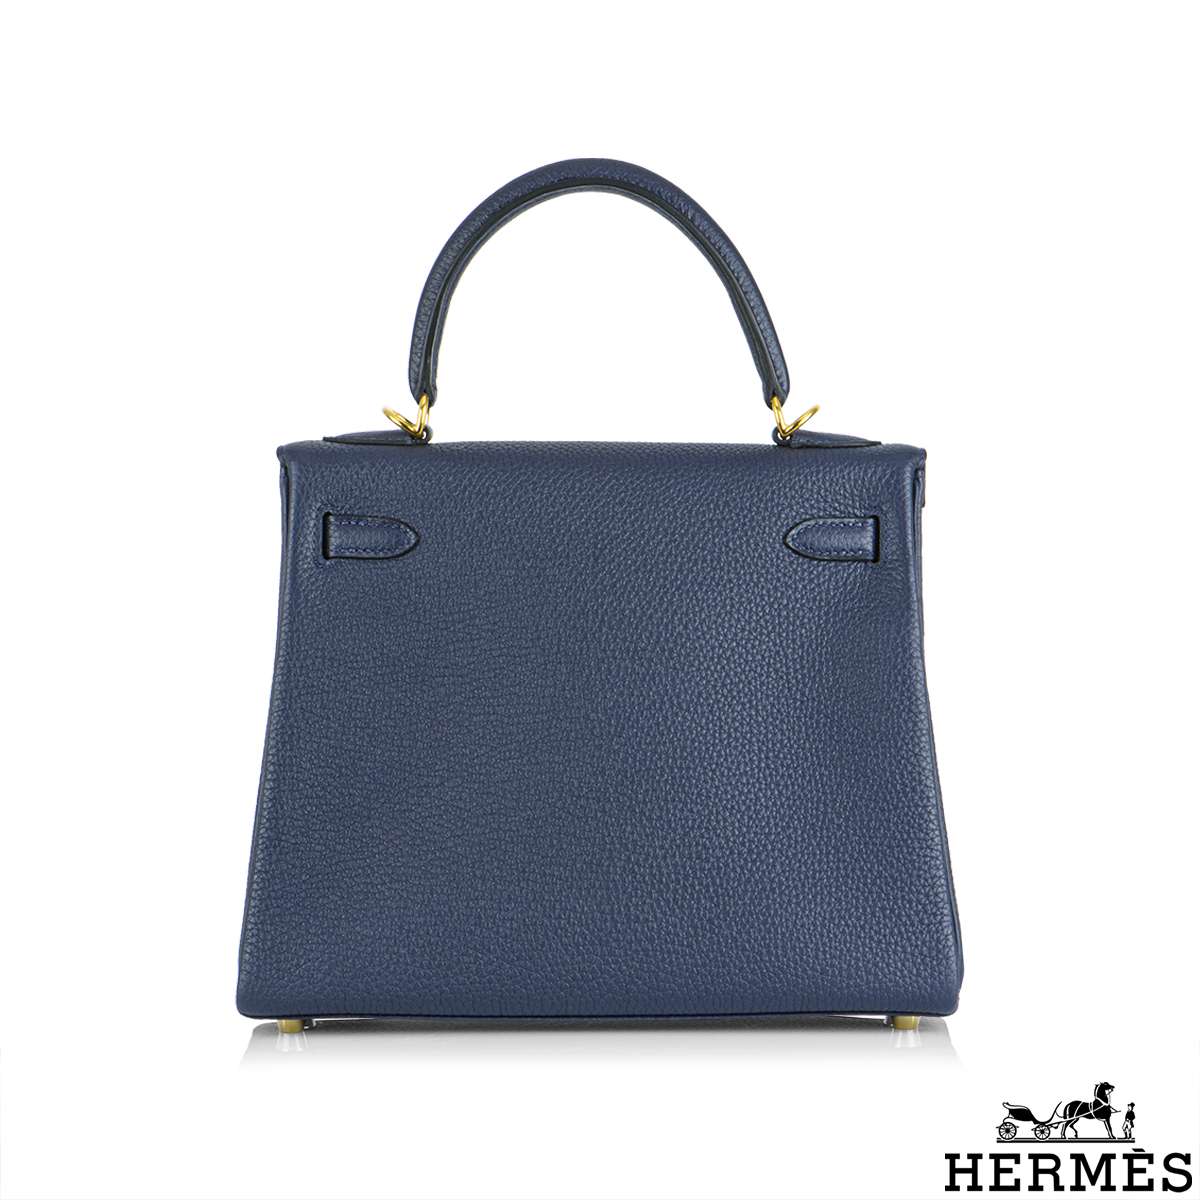 Hermes Anemone/Bleu Nuit Togo Leather Gold Finish Kelly Retourne 25 Bag  Hermes